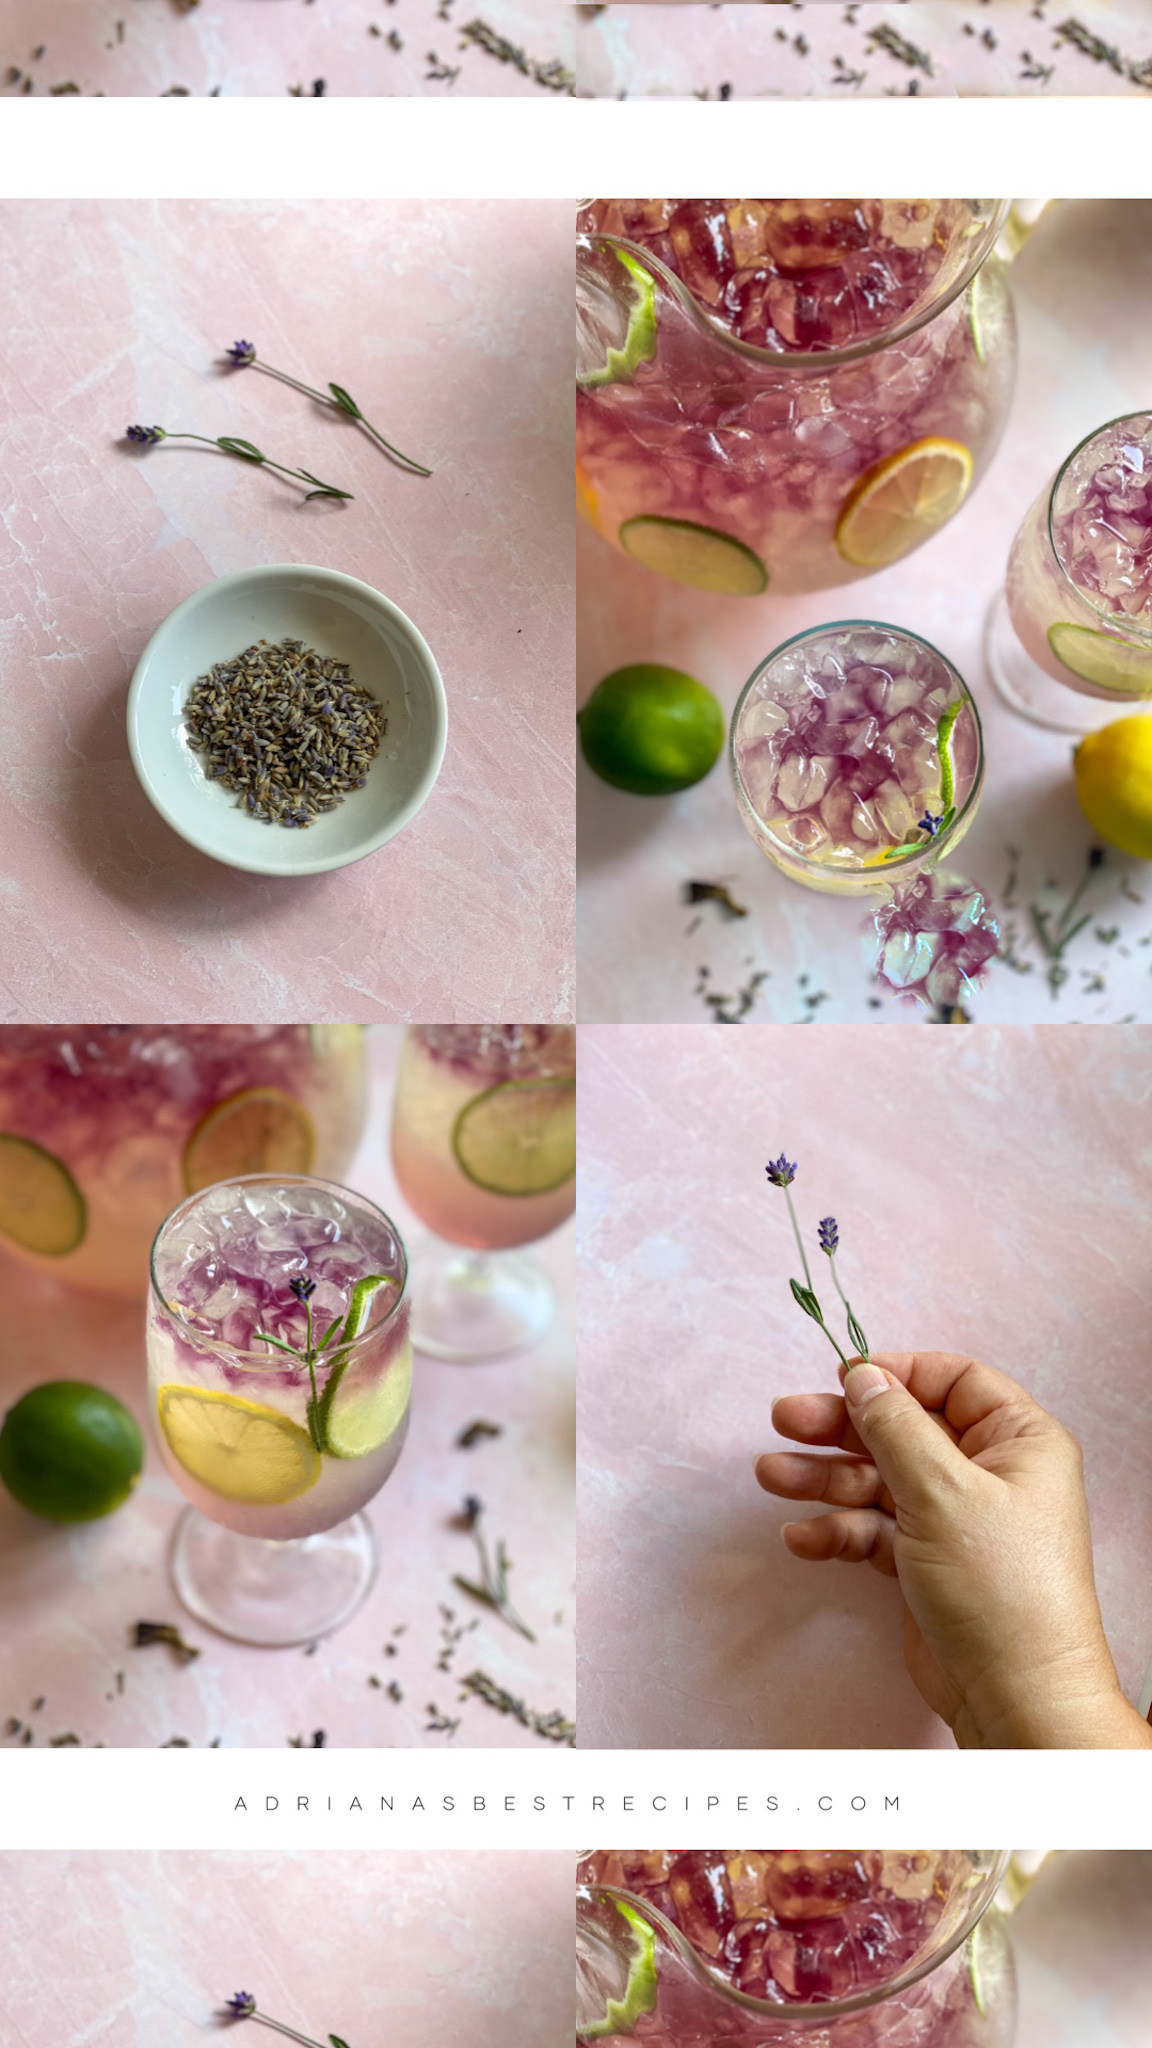 Un collage que muestra la limonada y la lavanda fresca y seca de grado culinario